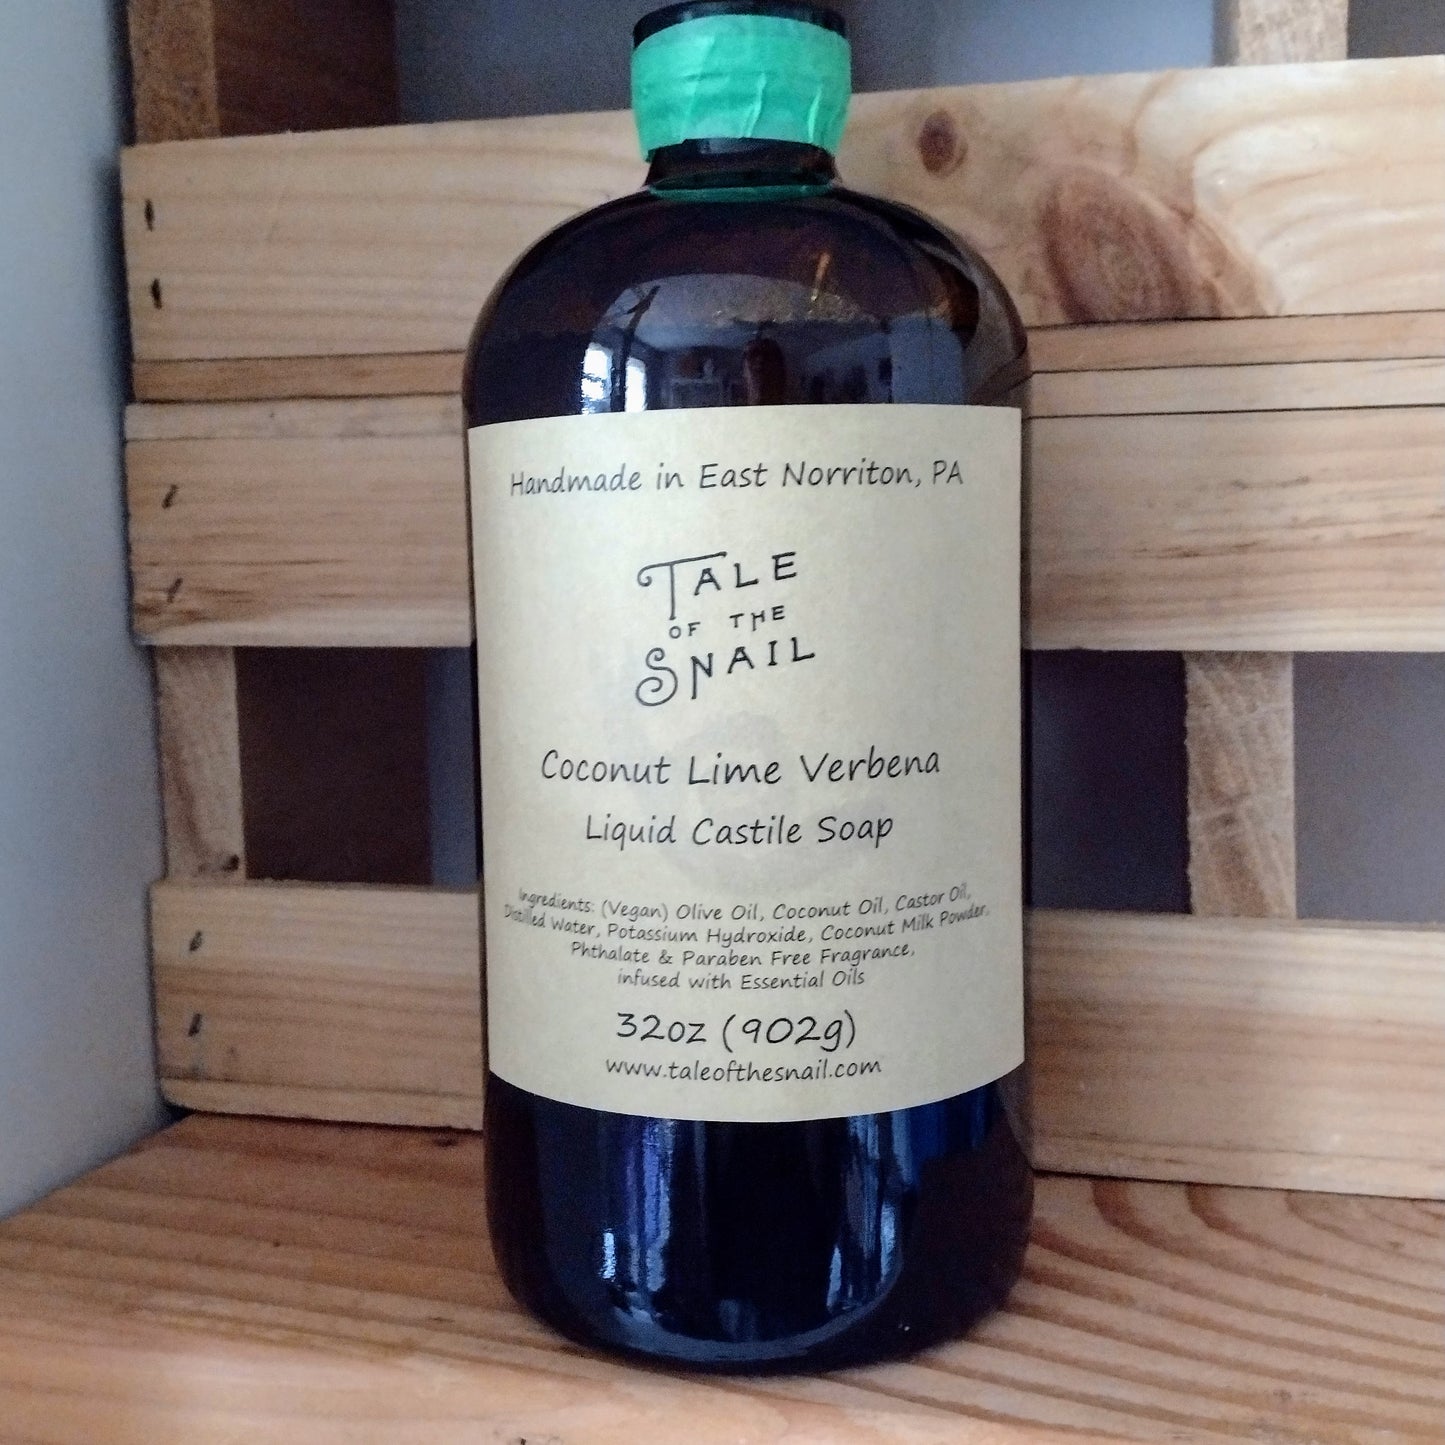 32 oz Liquid Castile Soap